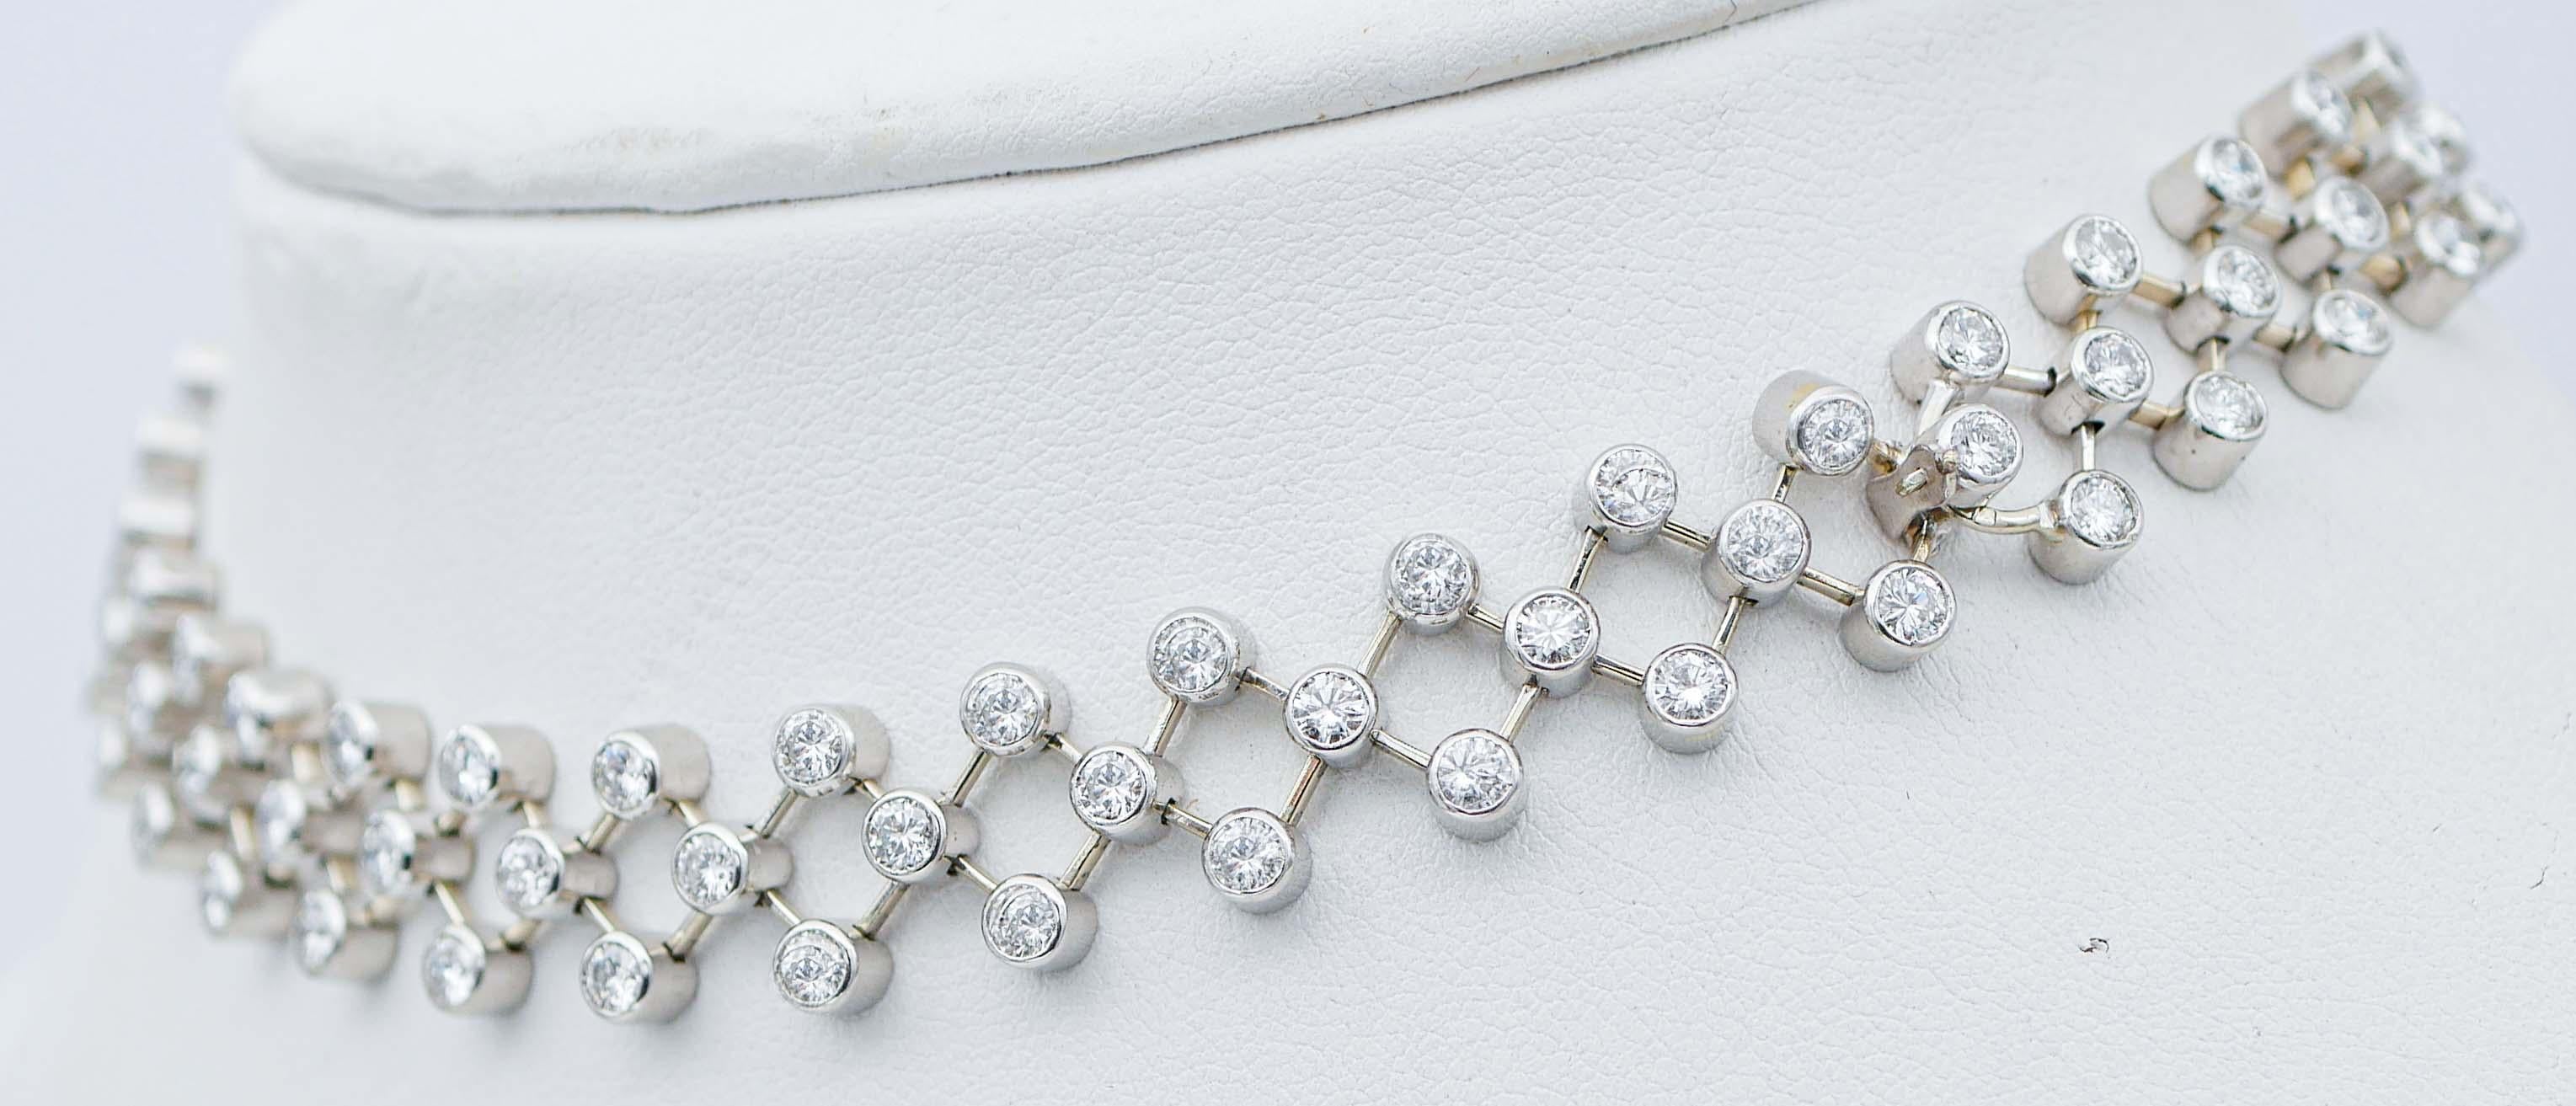 Brilliant Cut Diamonds, Platinum Bracelets / Necklace.